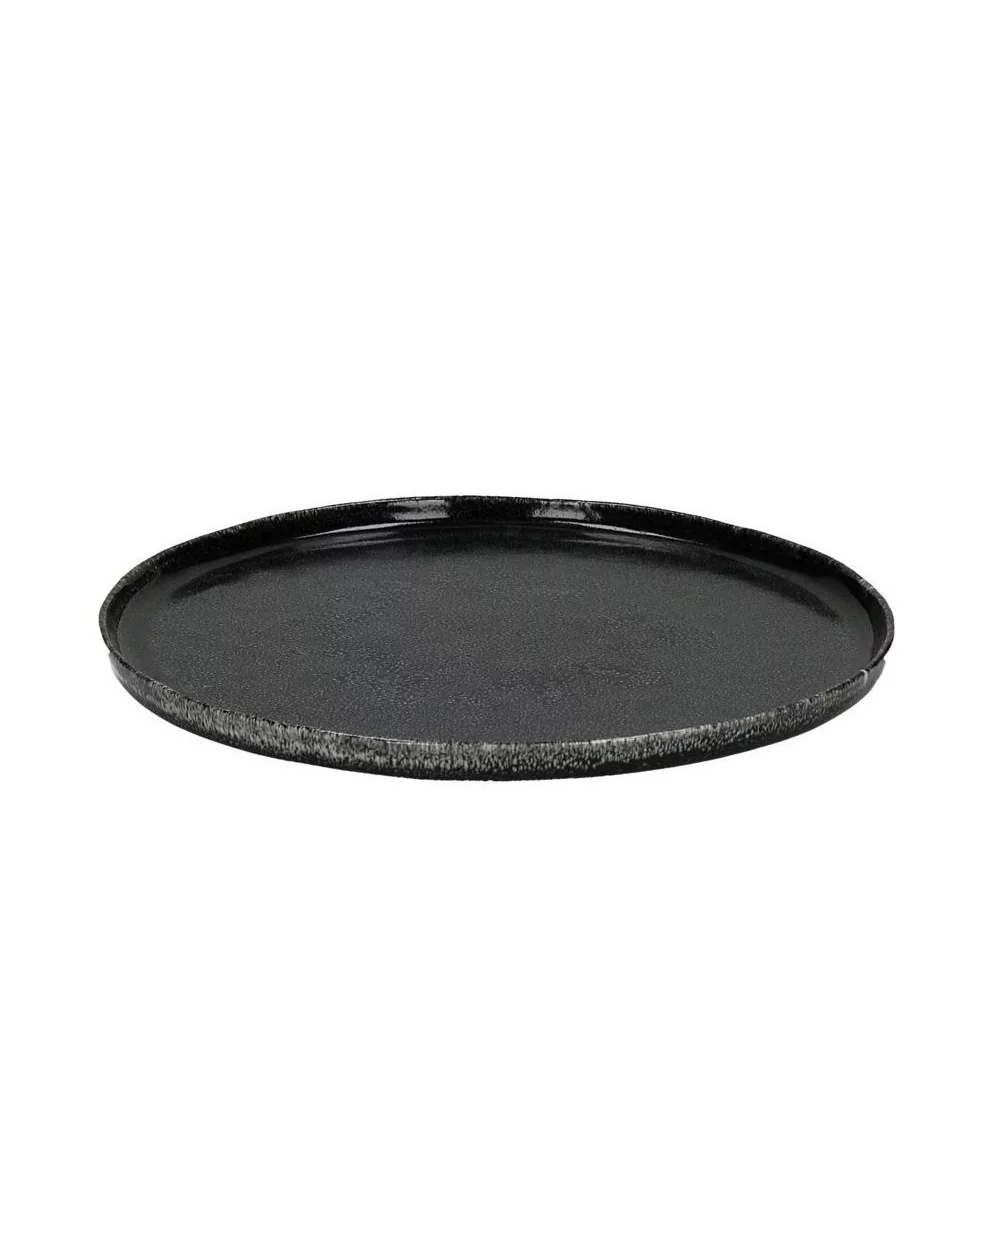 Kameninový plytký tanier PORCELINO EXPERIENCE, Black, 27 cm